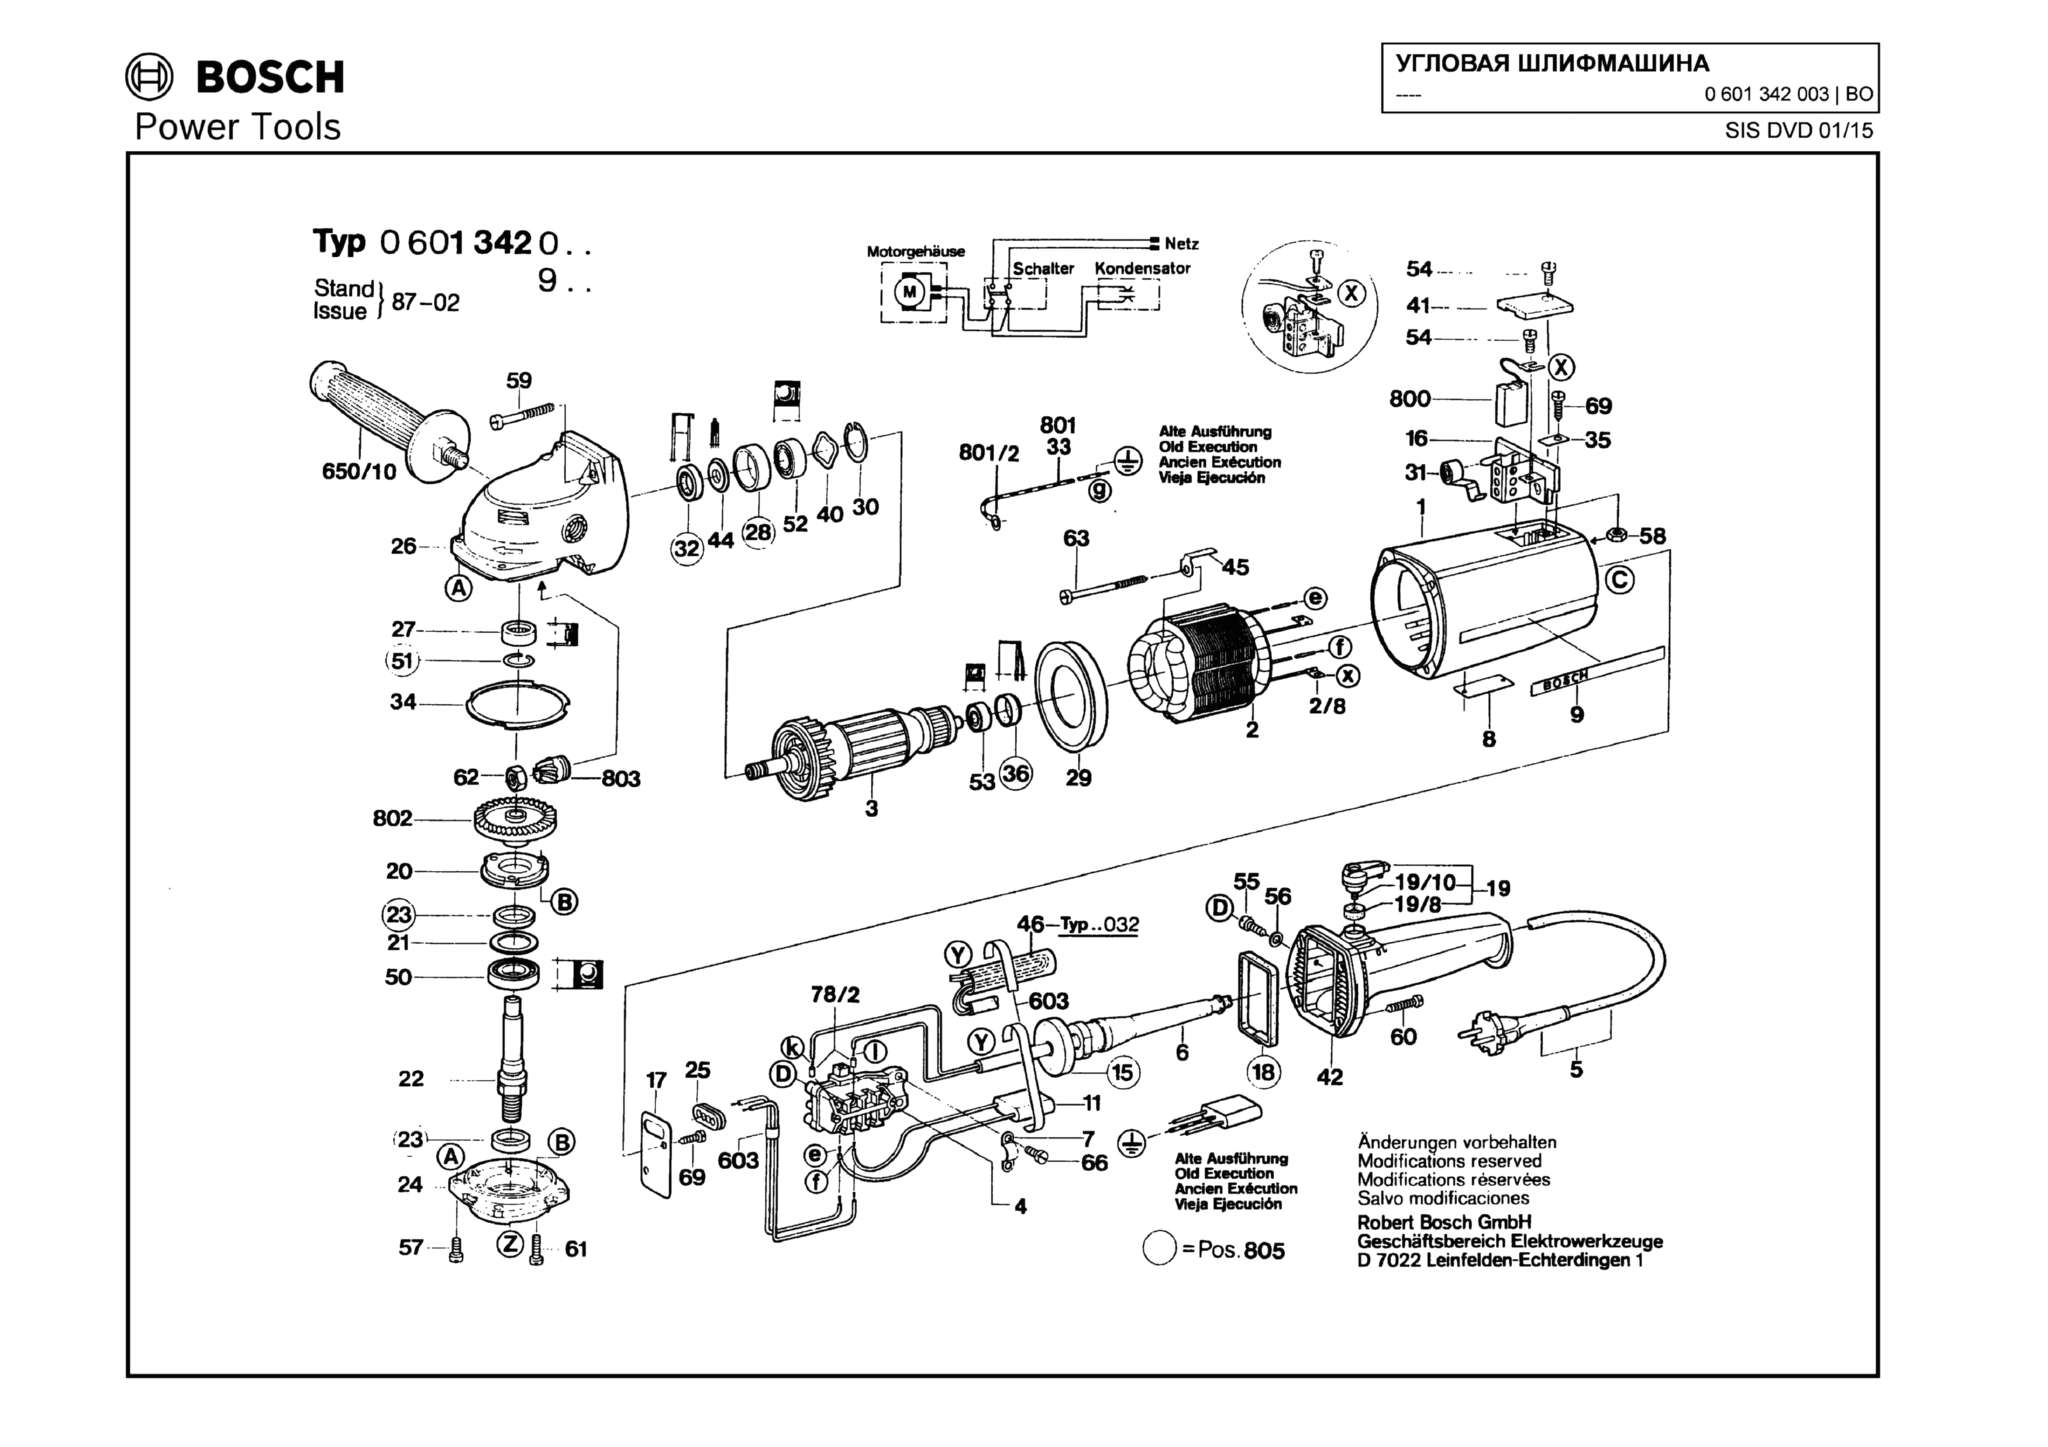 Запчасти, схема и деталировка Bosch (ТИП 0601342003)